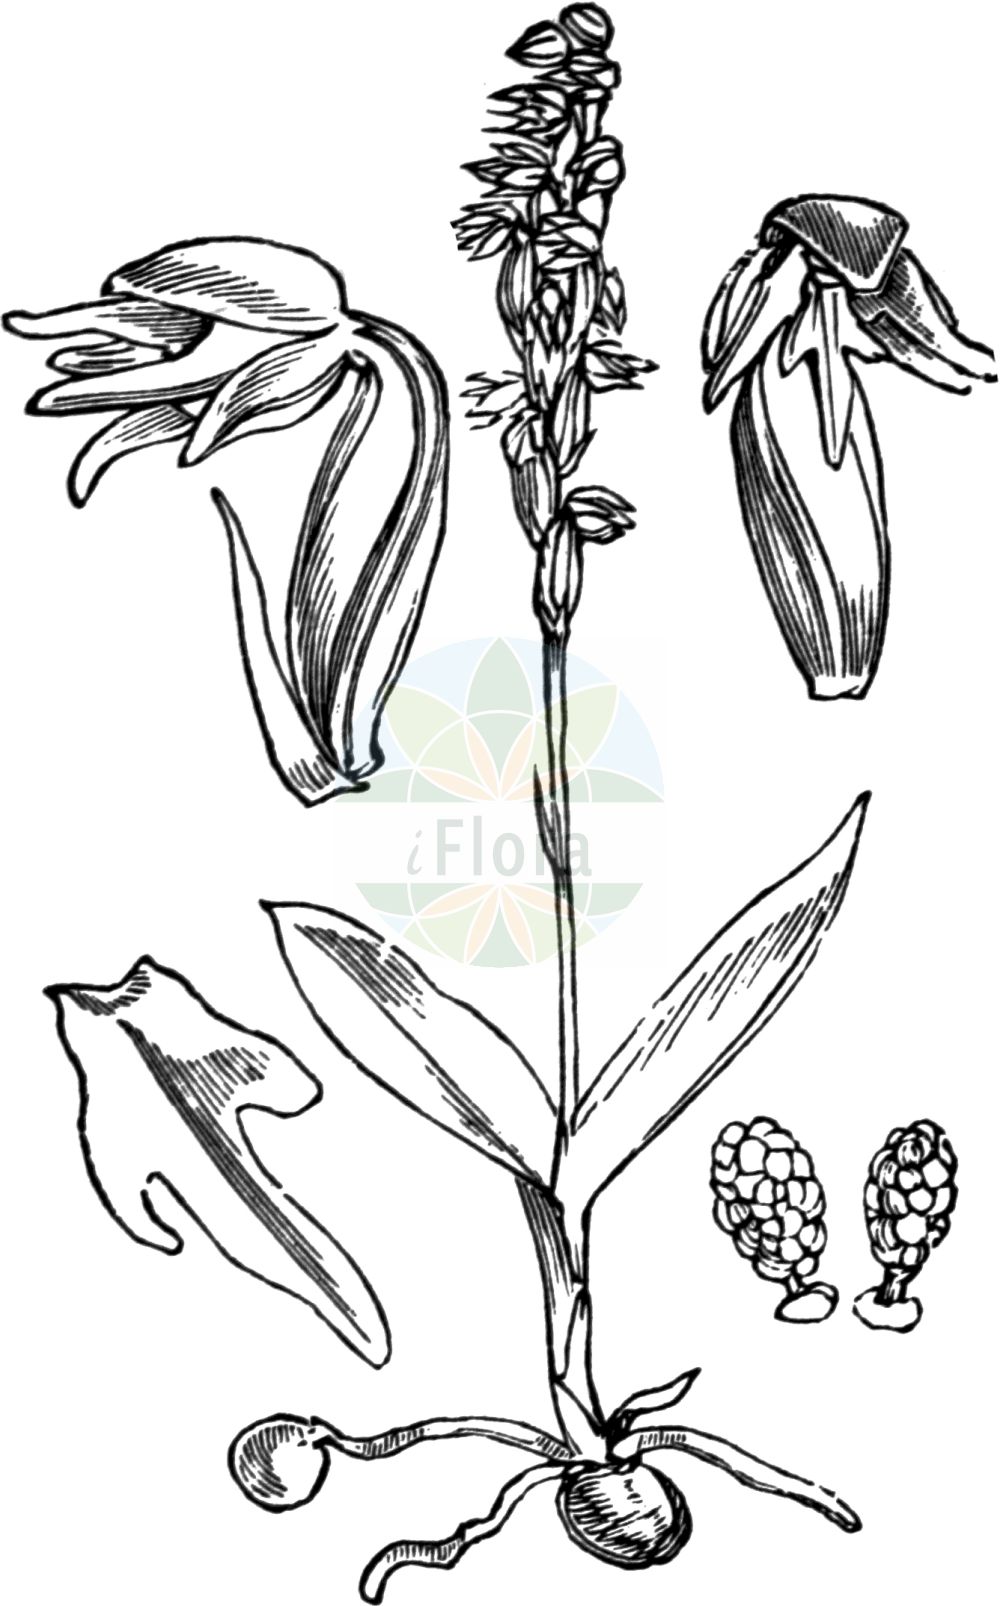 Historische Abbildung von Herminium monorchis (Einknollige Honigorchis - Musk Orchid). Das Bild zeigt Blatt, Bluete, Frucht und Same. ---- Historical Drawing of Herminium monorchis (Einknollige Honigorchis - Musk Orchid). The image is showing leaf, flower, fruit and seed.(Herminium monorchis,Einknollige Honigorchis,Musk Orchid,Arachnites monorchis,Epipactis monorchis,Herminium clandestinum,Herminium monorchis,Herminium tanguticum,Monorchis herminium,Ophrys herminium,Ophrys monorchis,Ophrys triorchis,Orchis herminium,Orchis monorchis,Satyrium monorchis,Einknollige Honigorchis,Einknolle,Elfenstaendel,Musk Orchid,Herminium,Honigorchis,Musk Orchid,Orchidaceae,Knabenkrautgewächse,Orchid family,Blatt,Bluete,Frucht,Same,leaf,flower,fruit,seed,Fitch et al. (1880))